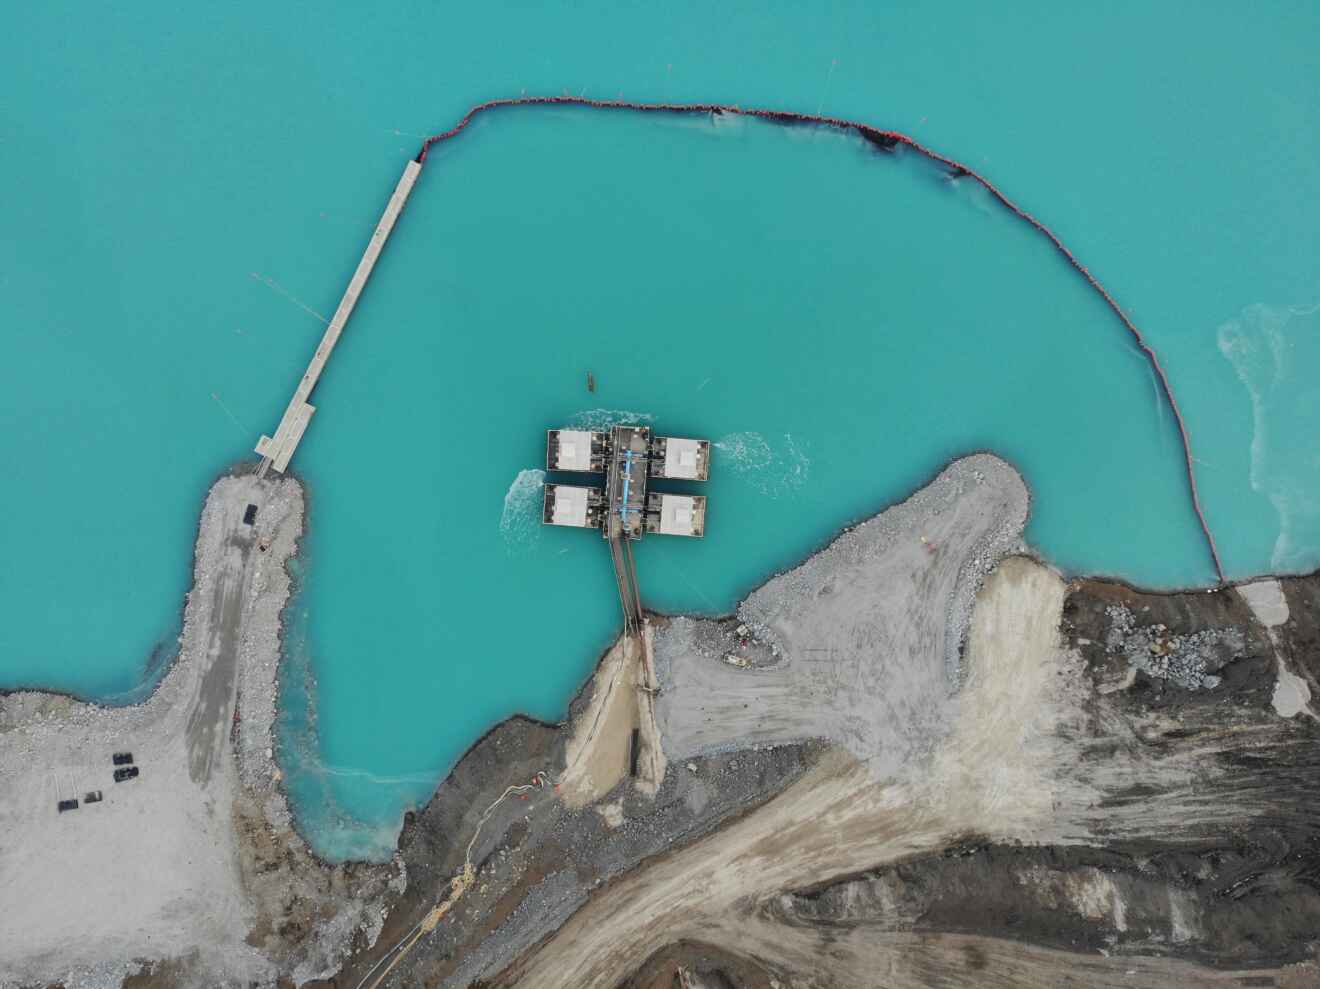 Barreras y pasarelas flotantes Xrosswater en estanque de relave mineros en Canadá